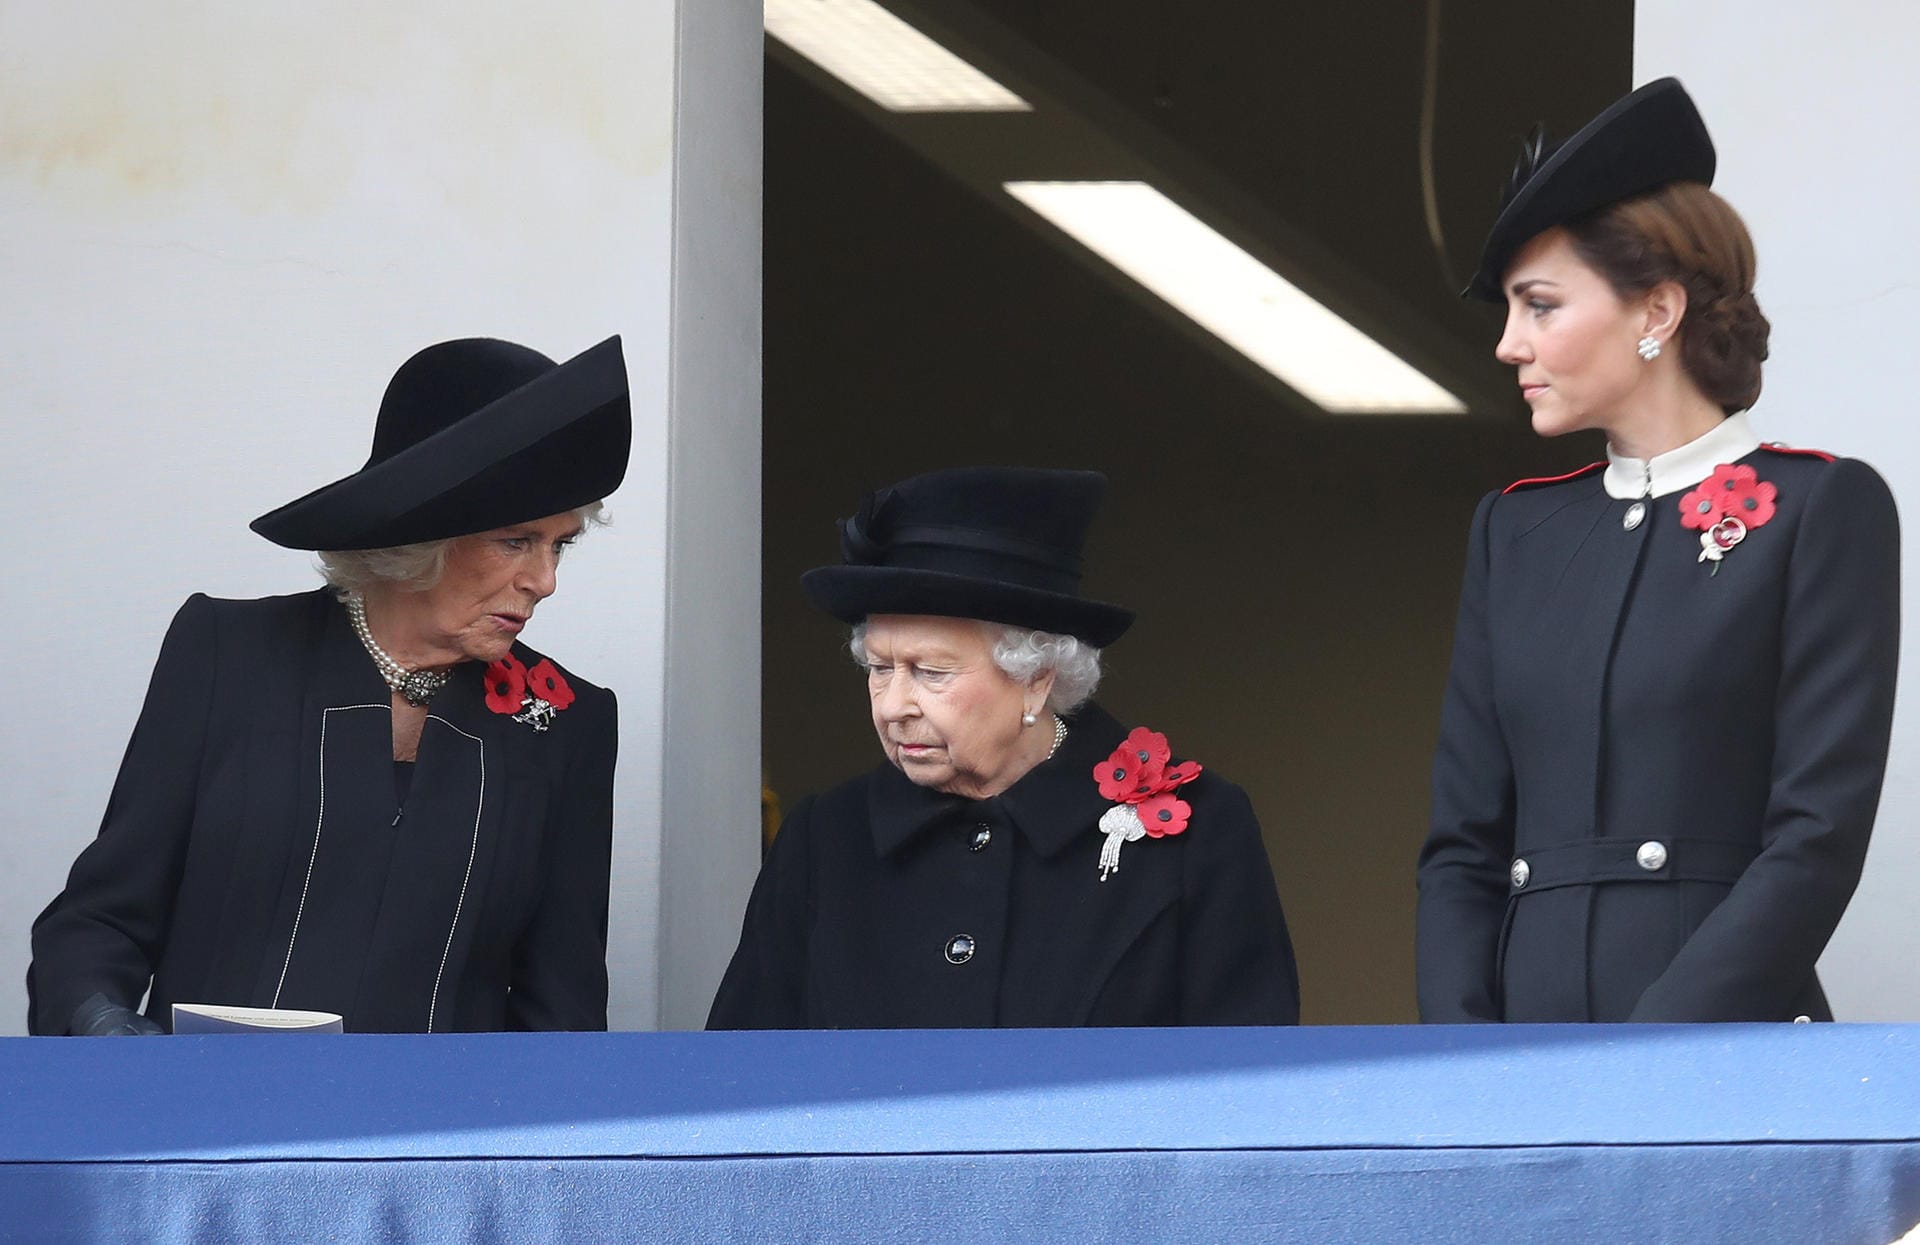 Das finden die Fans unmöglich: Camilla lächelt und versucht mit der Queen zu plaudern. Da schaut sogar Herzogin Kate strafend drein.